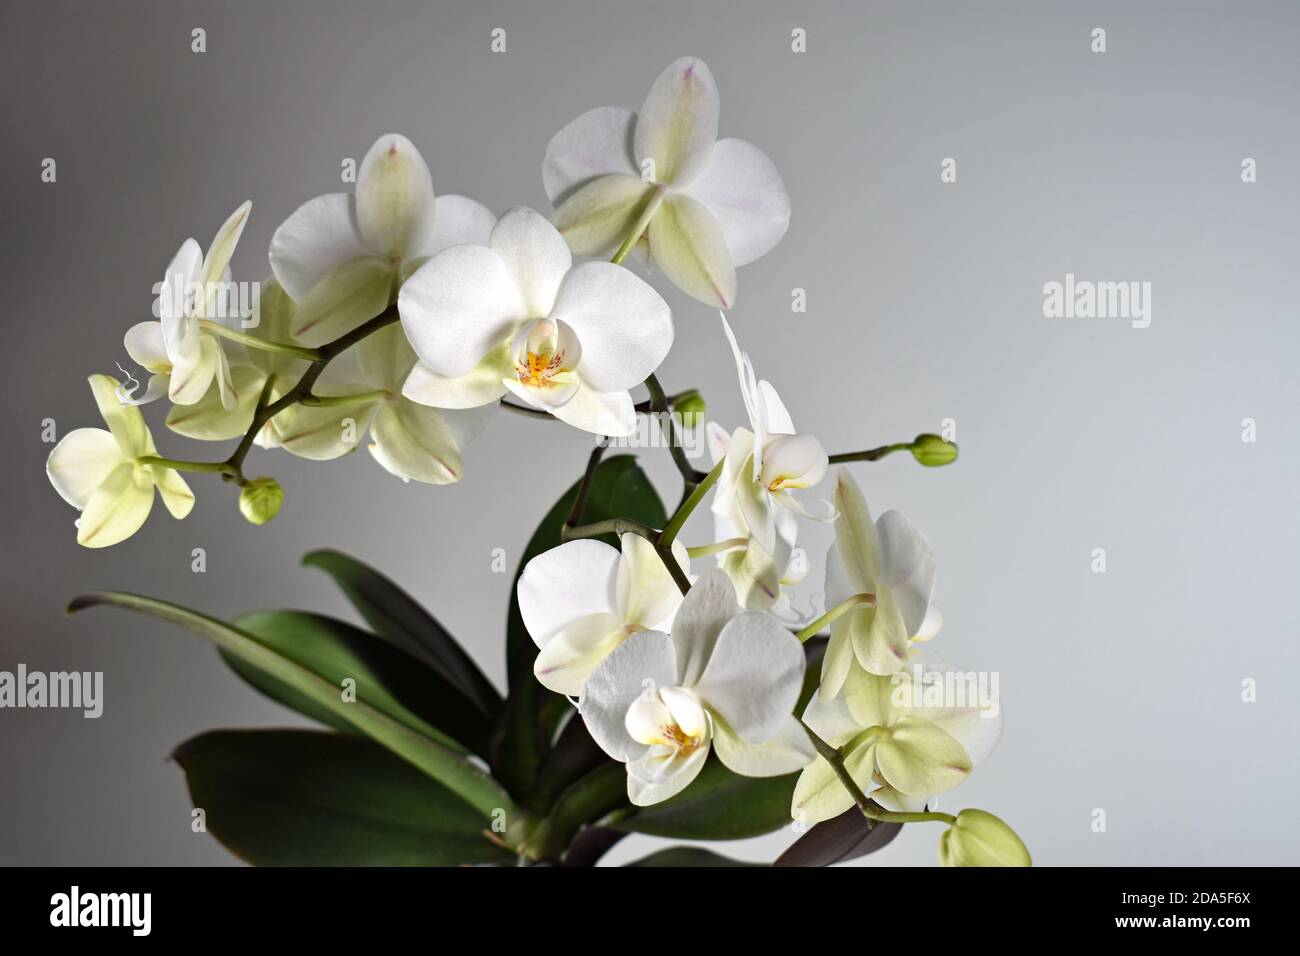 Eine weiße Orchidee (Phalaenopsis) in der Blüte. Der Blütenstiel und die grünen Blätter vor einem schlichten, grauen Hintergrund mit Kopiefläche. Stockfoto